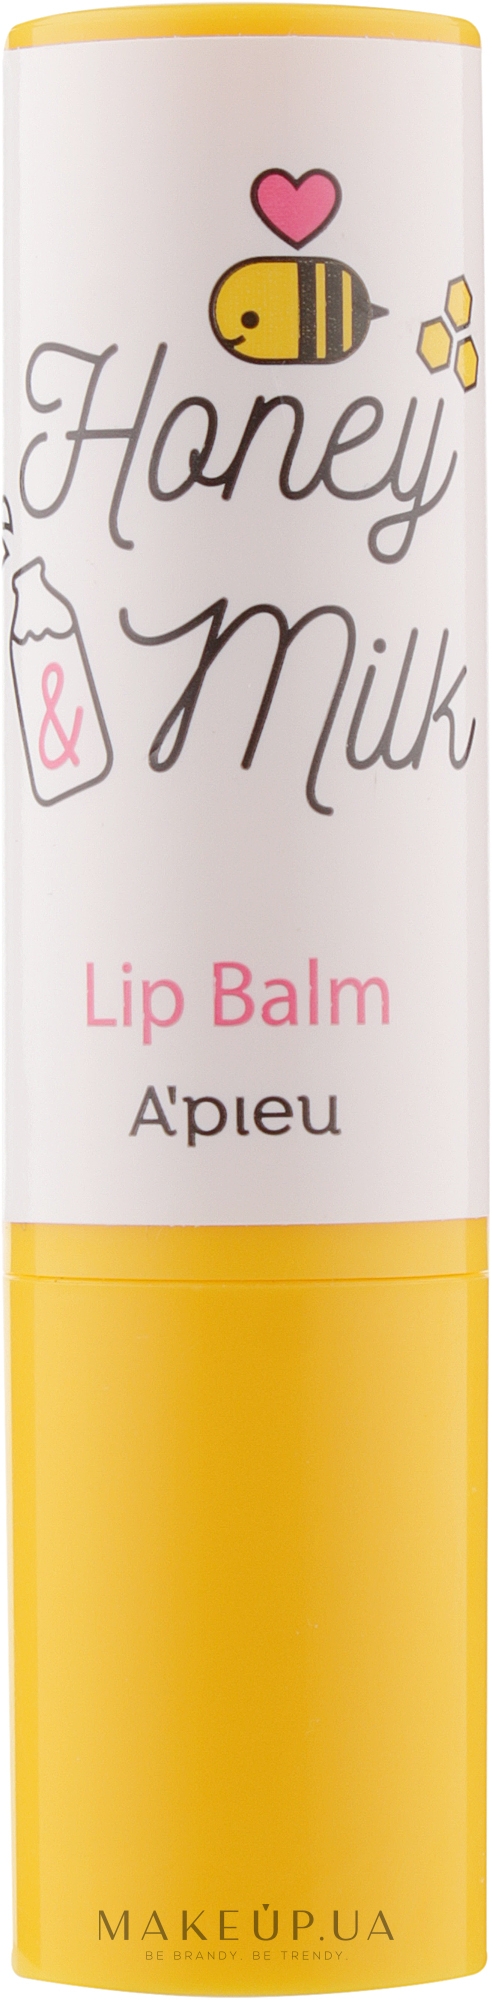 Питательный бальзам для губ - A'pieu Honey & Milk Lip Balm — фото 3.3g